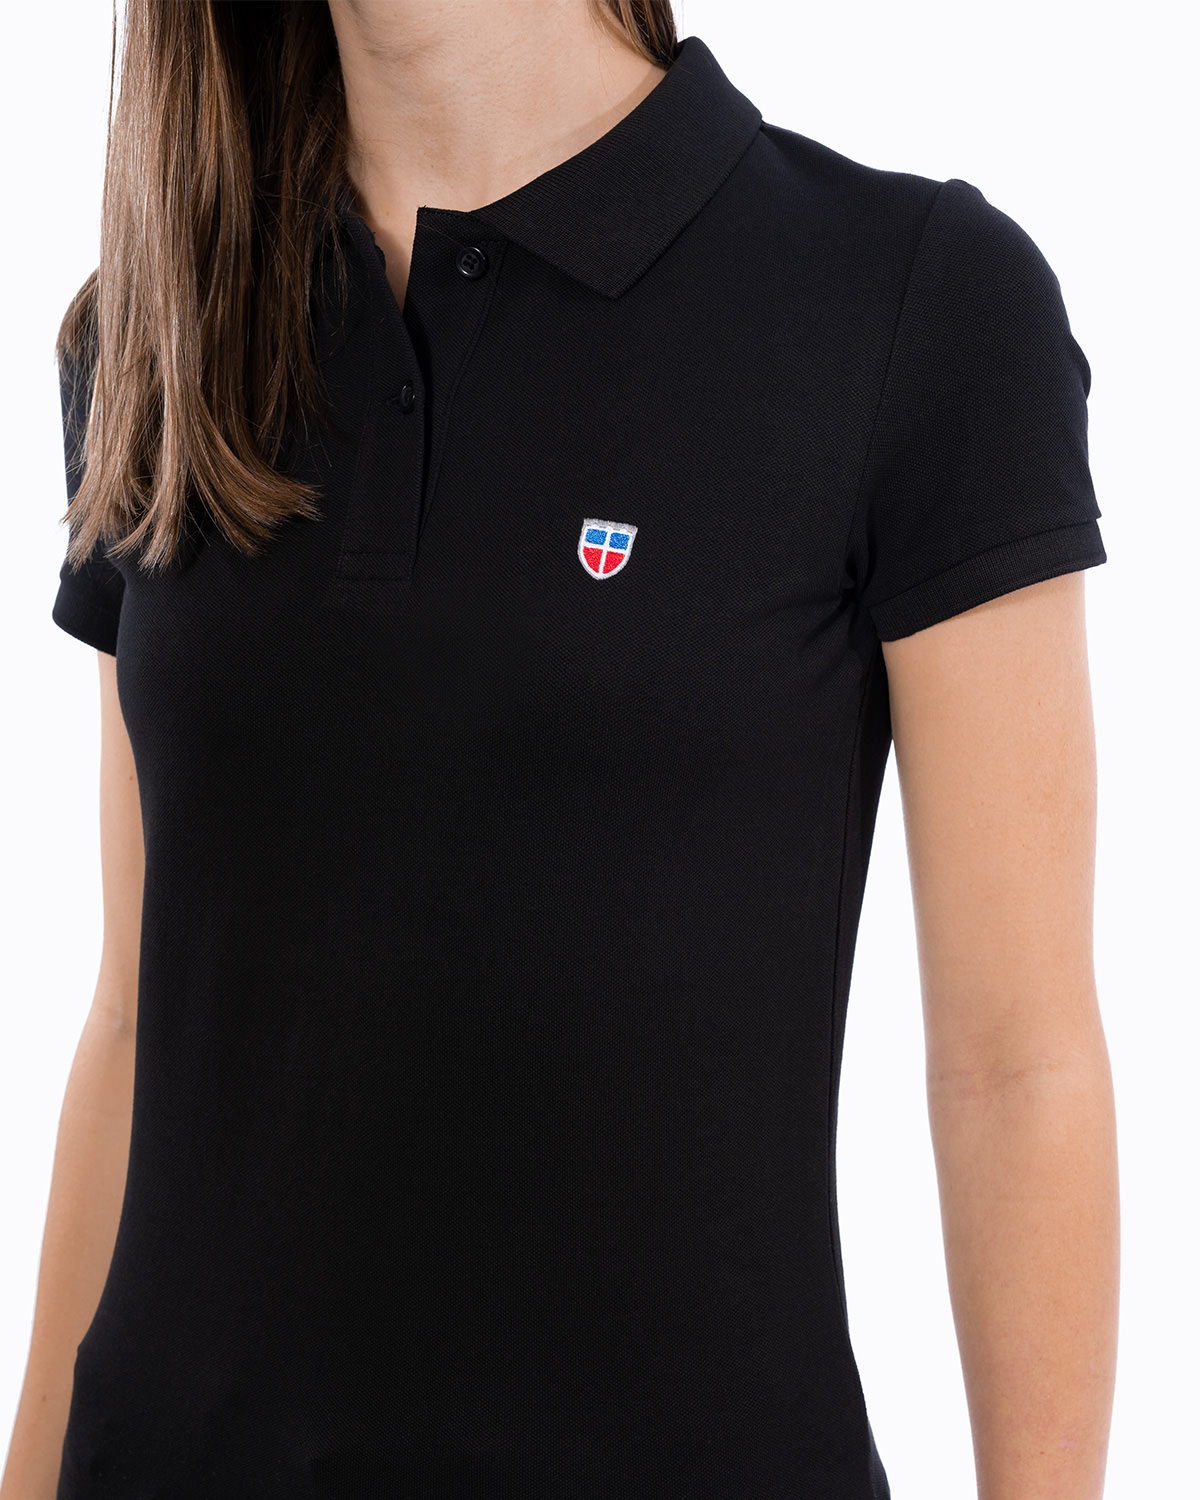 Vorderansicht des schwarzen Ladies-Polo-Shirt der Saarland-Marke LA SARRE. Nahaufnahme: Im Vordergrund stehen das gestickte Sarre-Wappen auf der linken Brust sowie das blaue Saumlabel mit der Aufschrift LA SARRE. Die Struktur des Piqué-Stoffs wird deutlich.